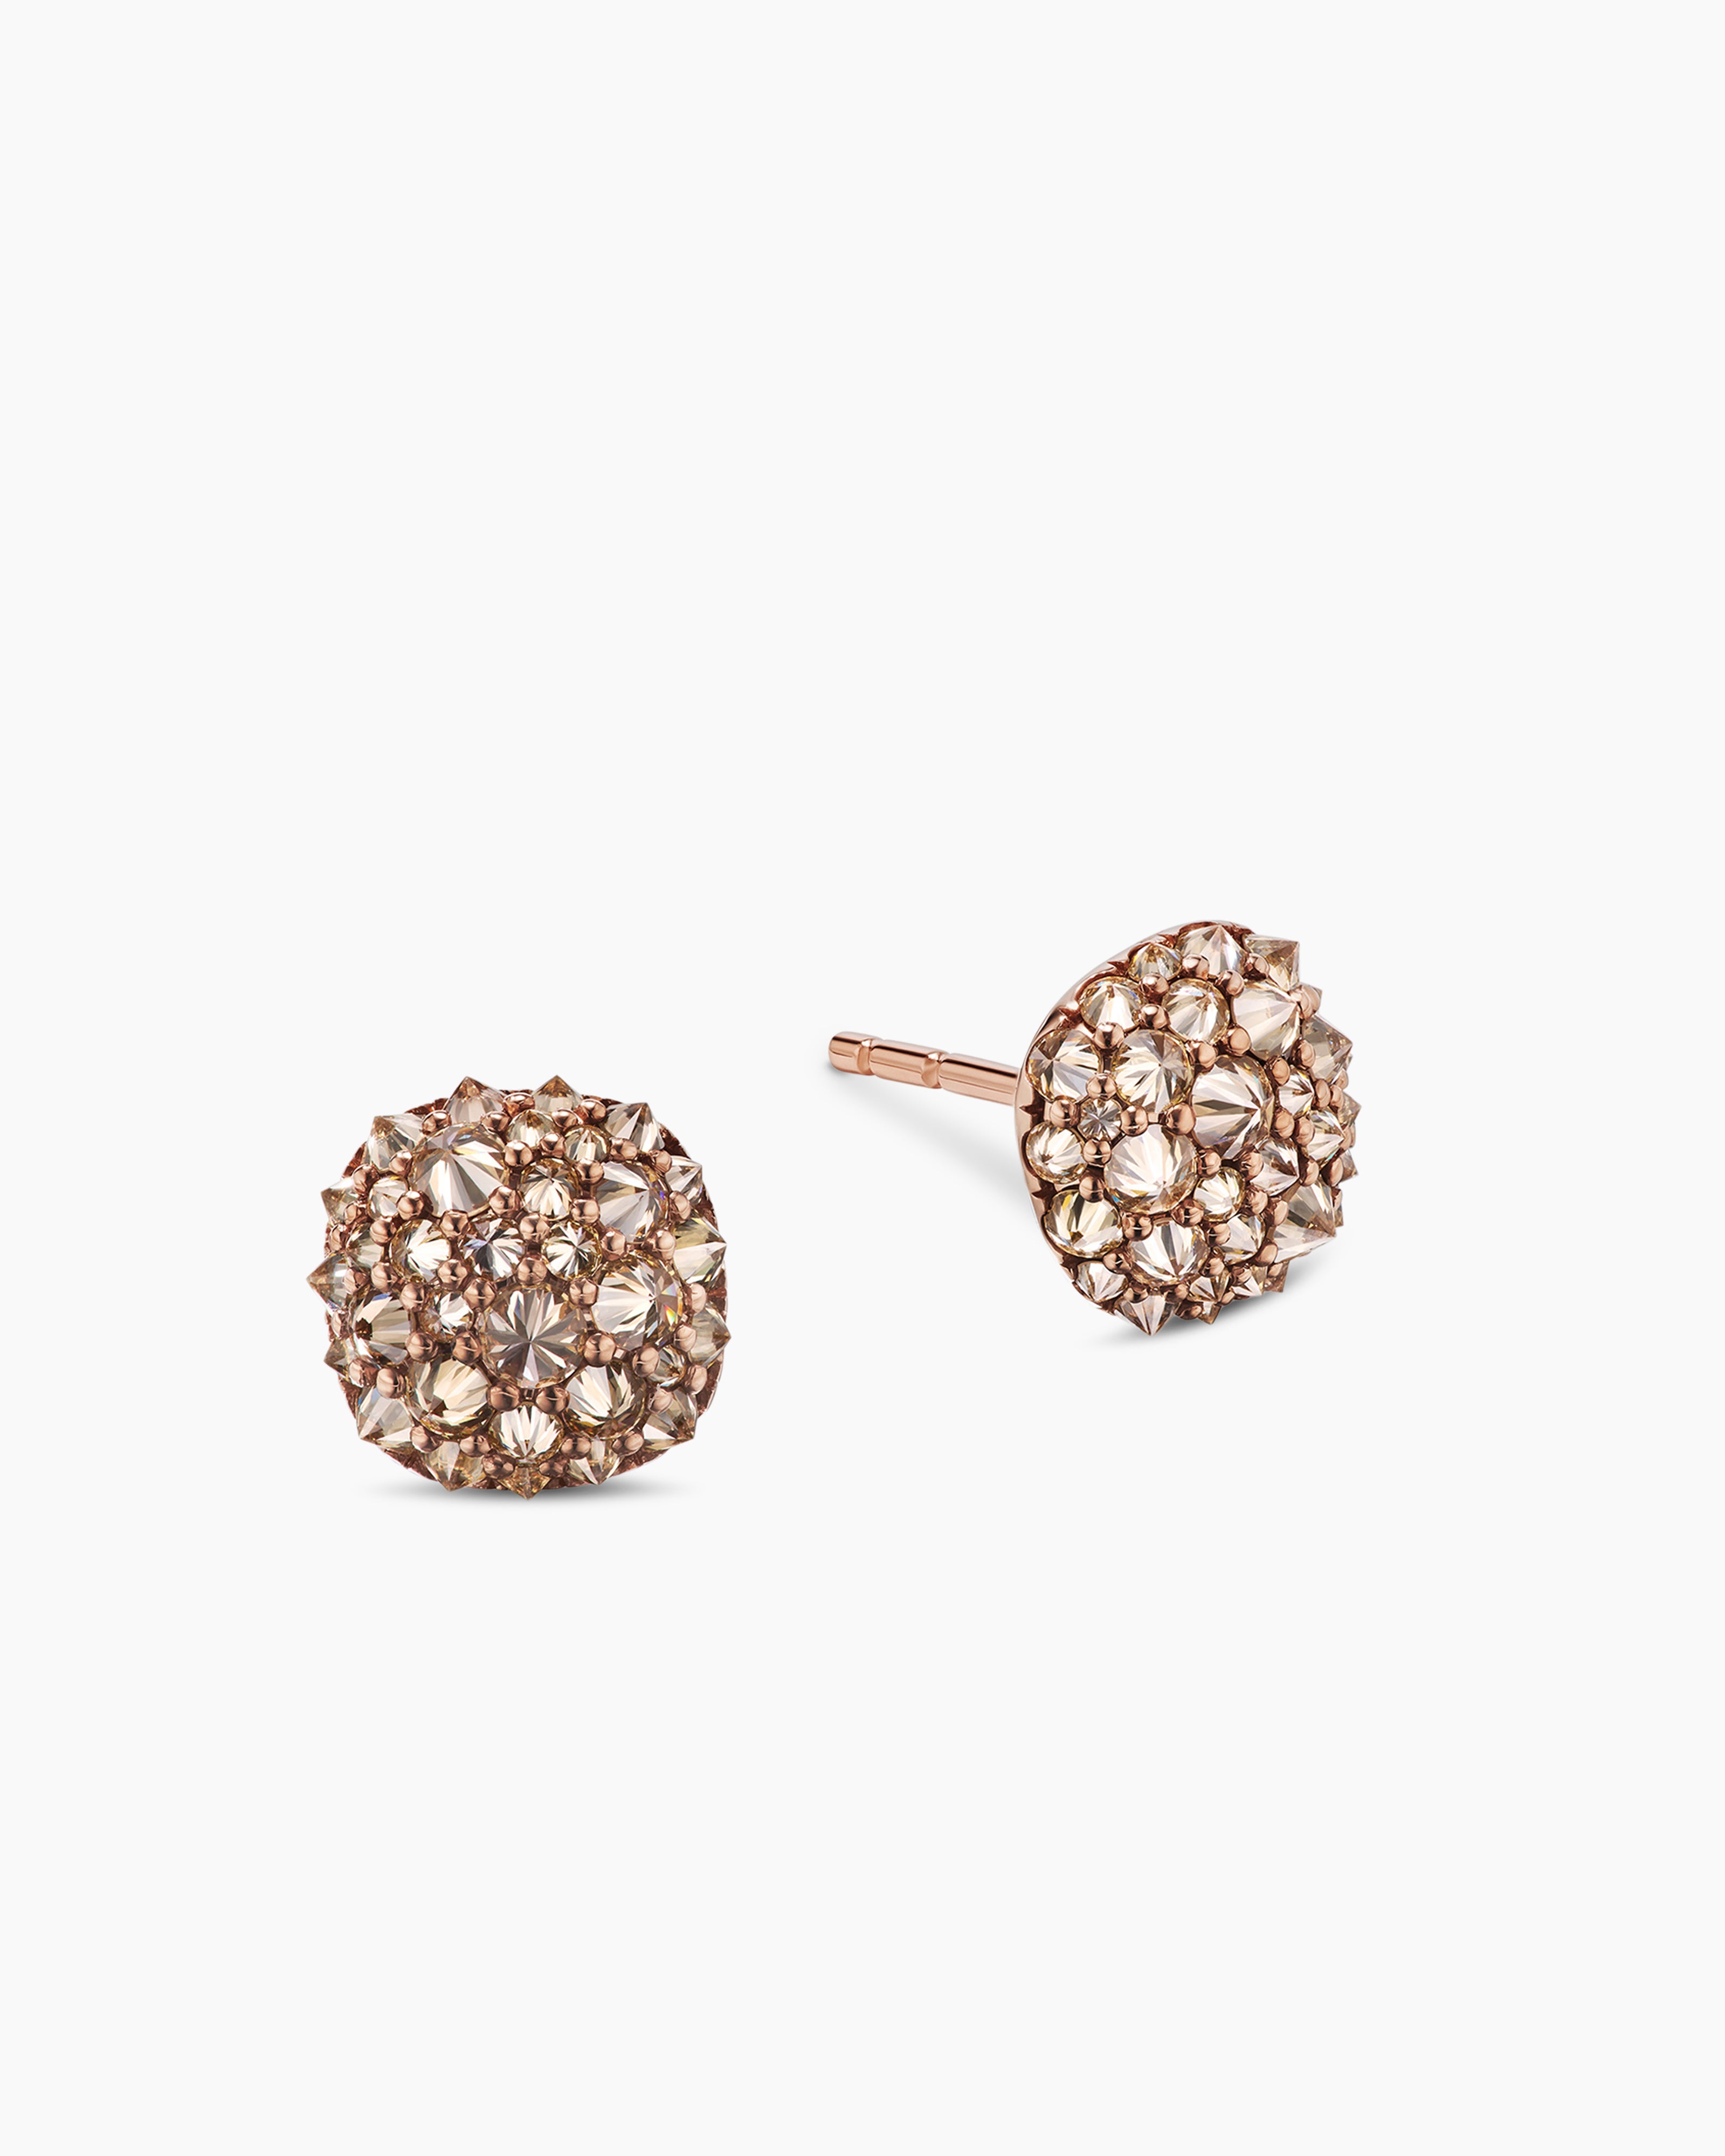 Rose Gold Diamond & Gemstone Earrings | All Diamond.co.uk